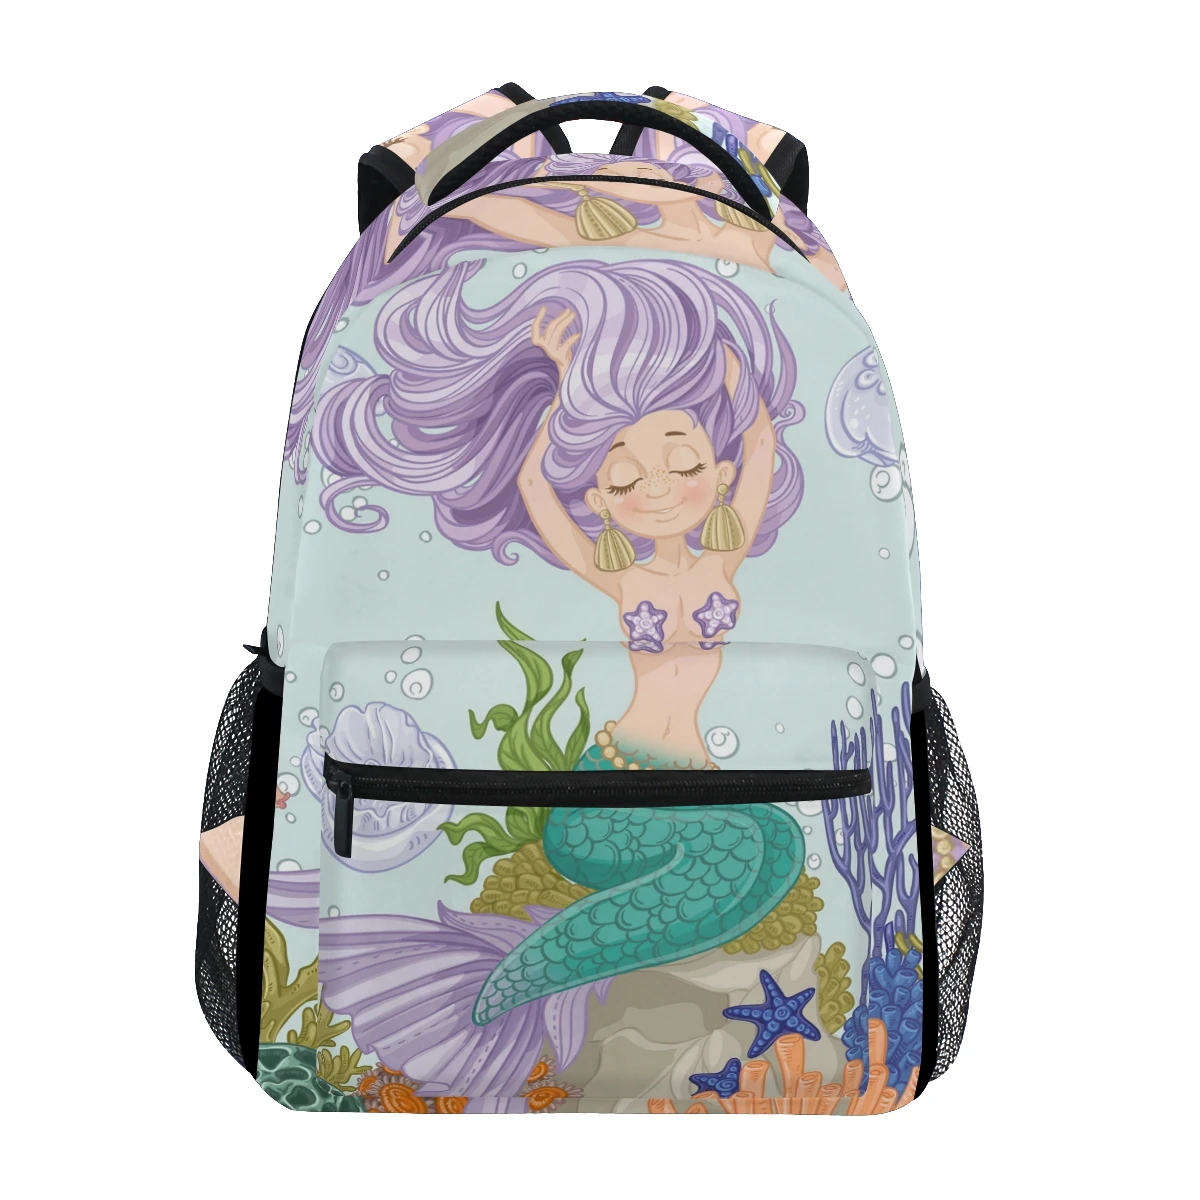 ALAZA Women Tote Handbag Colorful Mermaid Tail Large Top Handle Shoulder Bags 